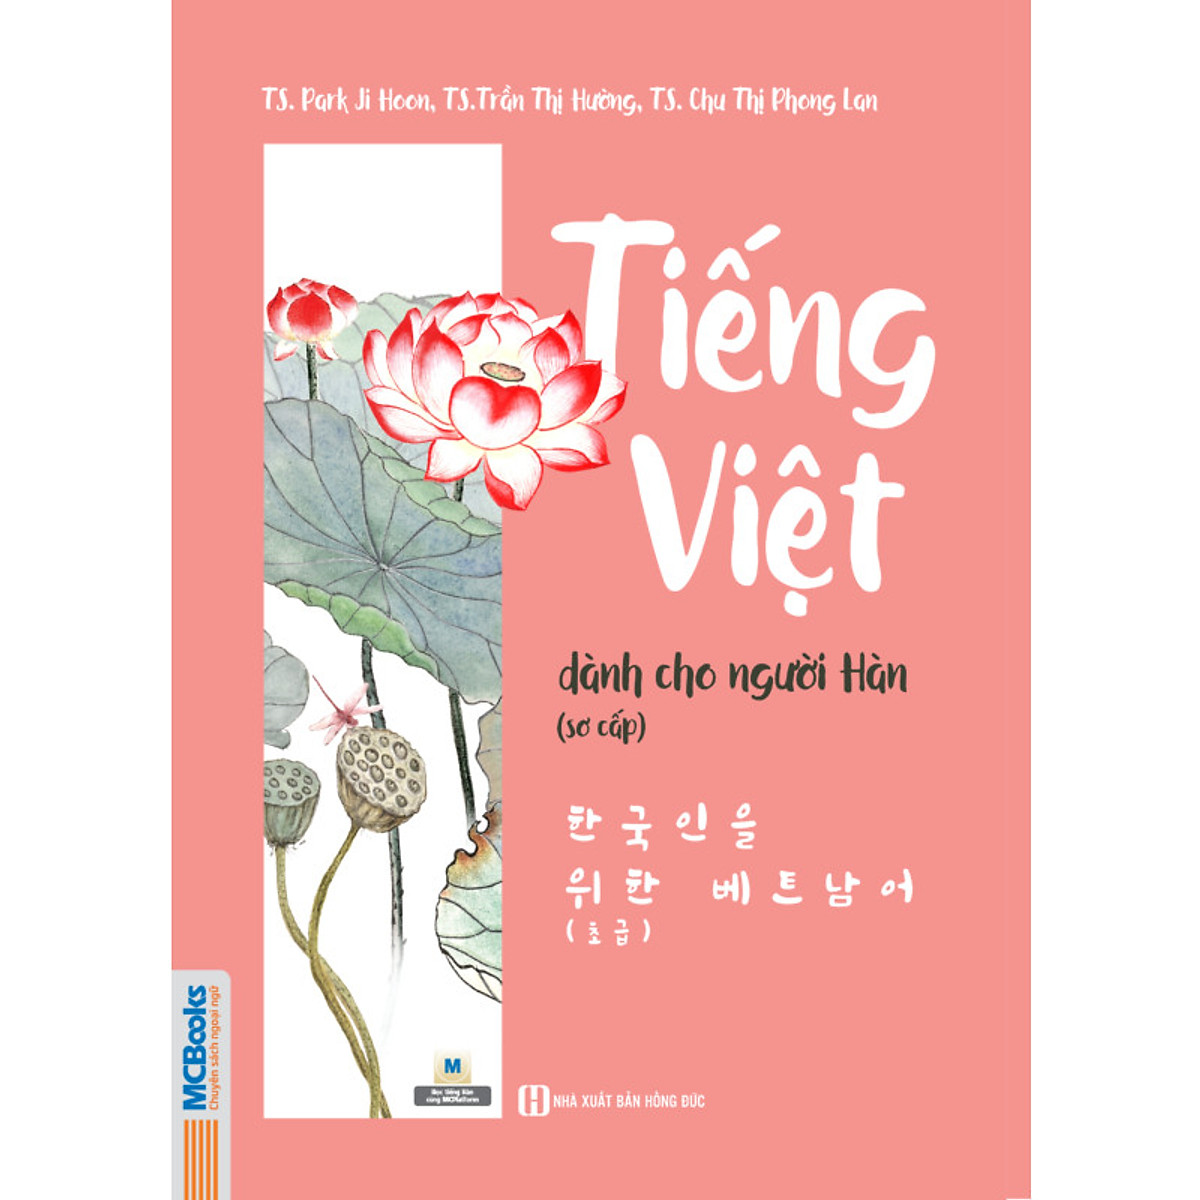 Tiếng Việt Dành Cho Người Hàn Sơ Cấp - Sách học Tiếng Việt đơn giản và hiệu quả cho người Hàn Quốc kèm audio tiếng Việt chuẩn thông qua app MCBOOKS KR